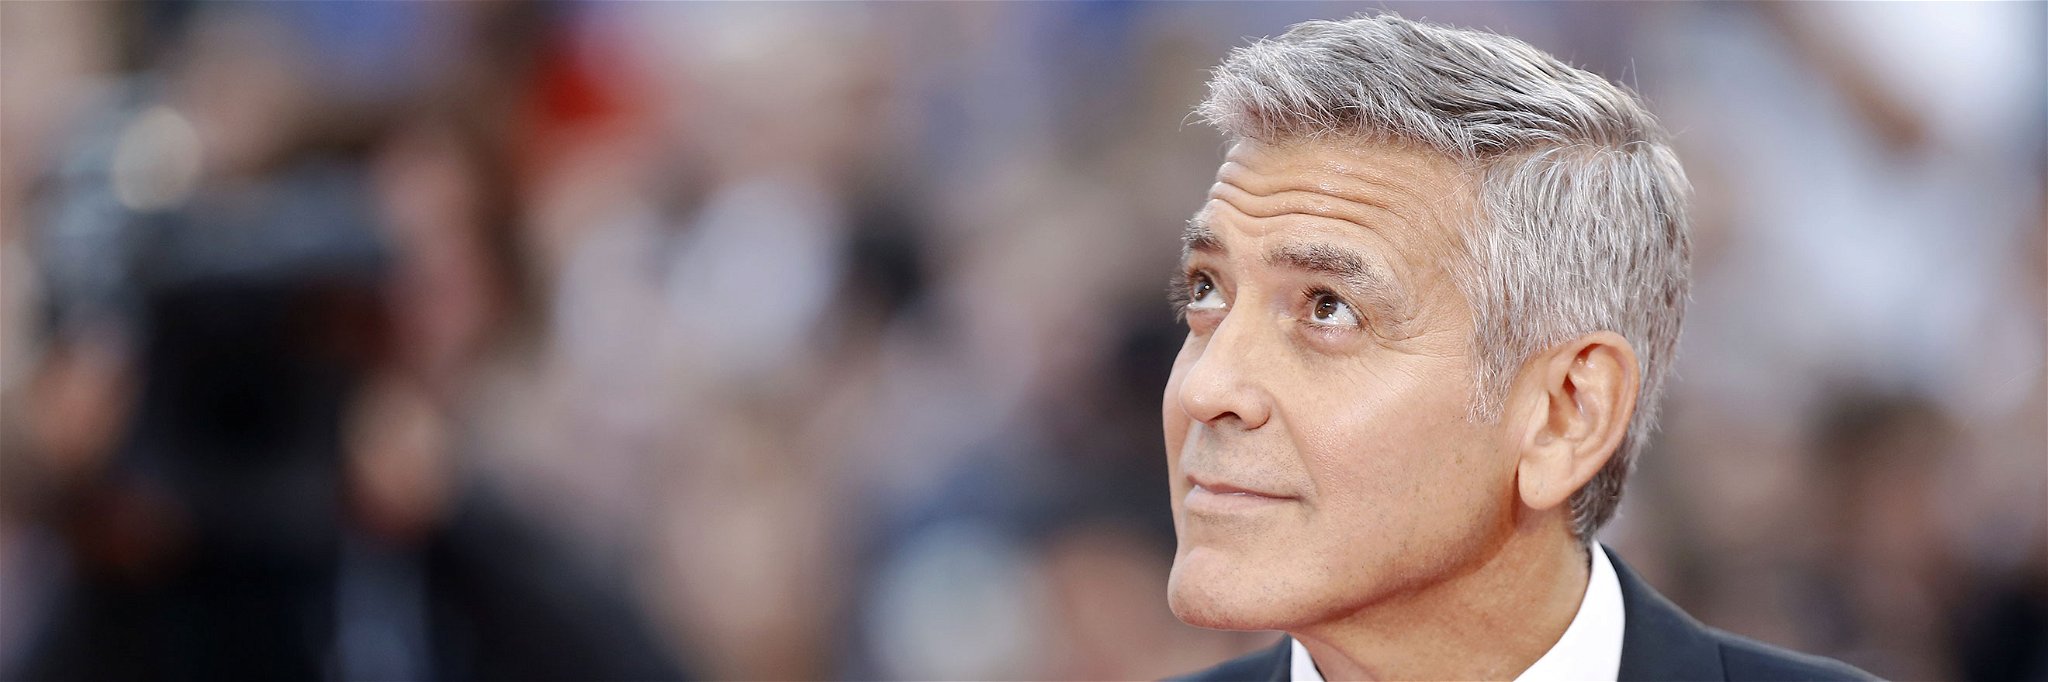 Bei der neuesten Kampagne mit George Clooney setzt Nespresso auf humorvolle Action.